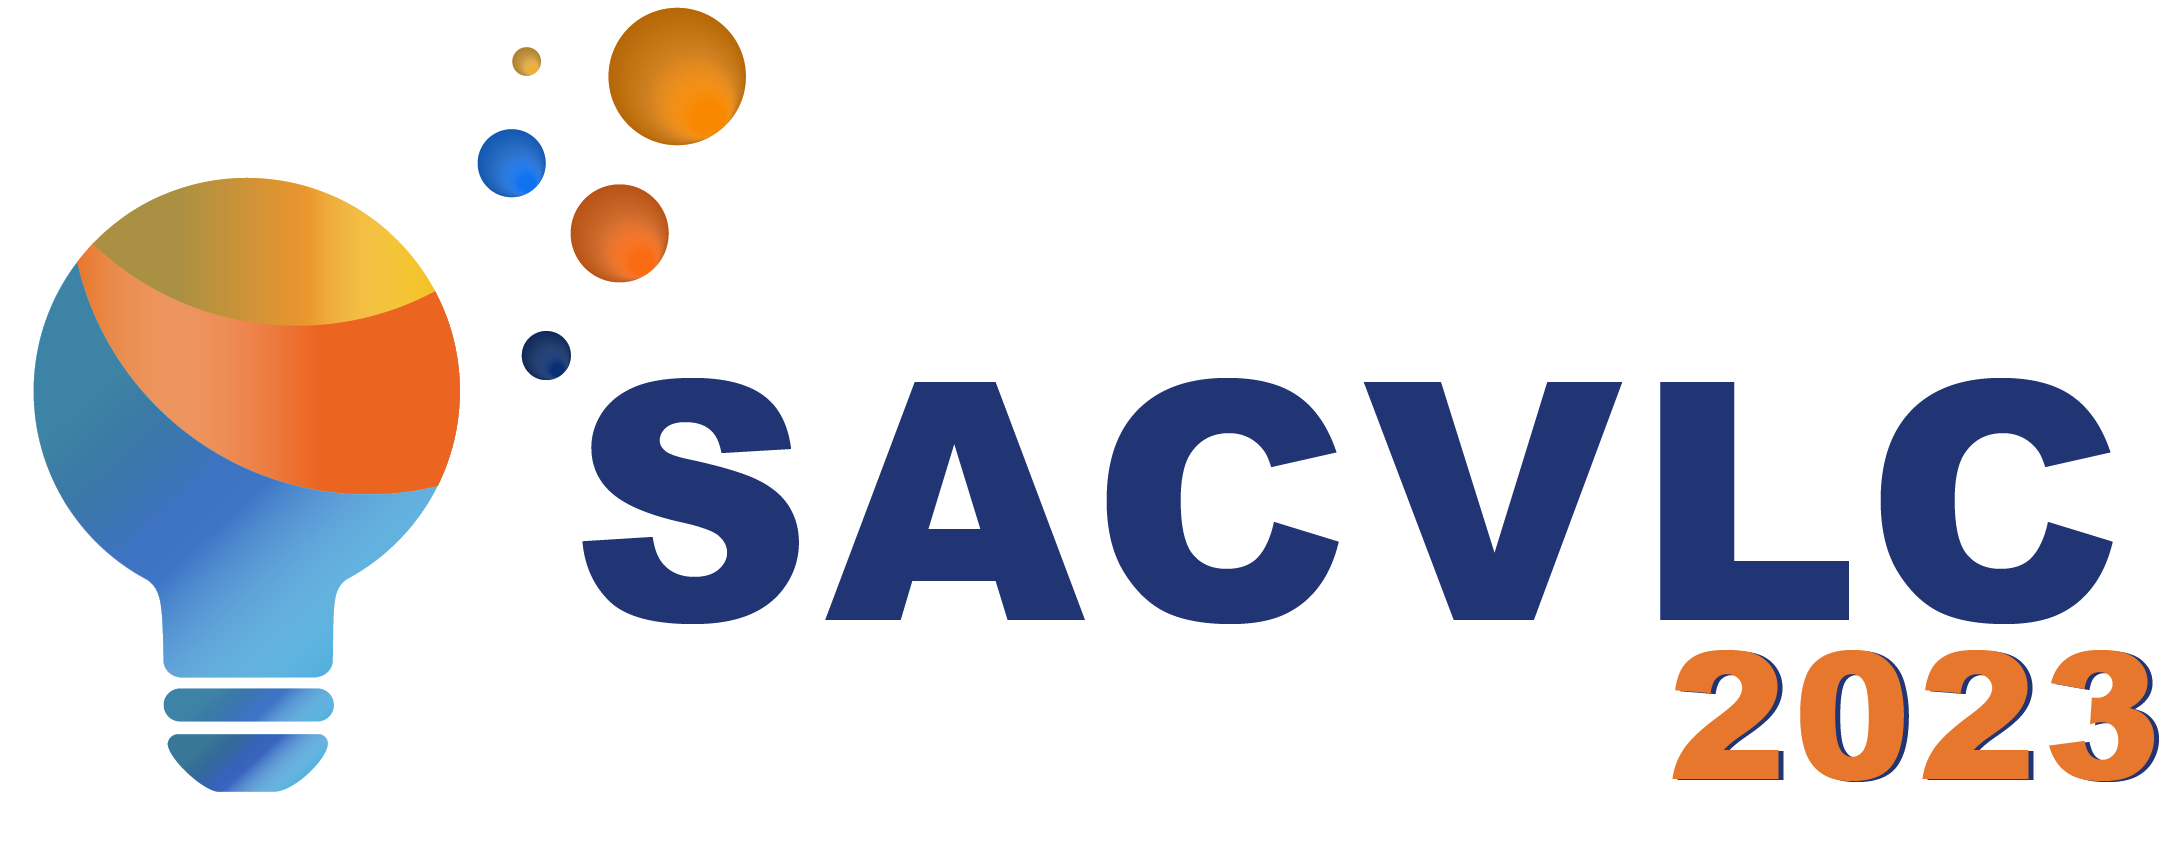 SACVLC 2023